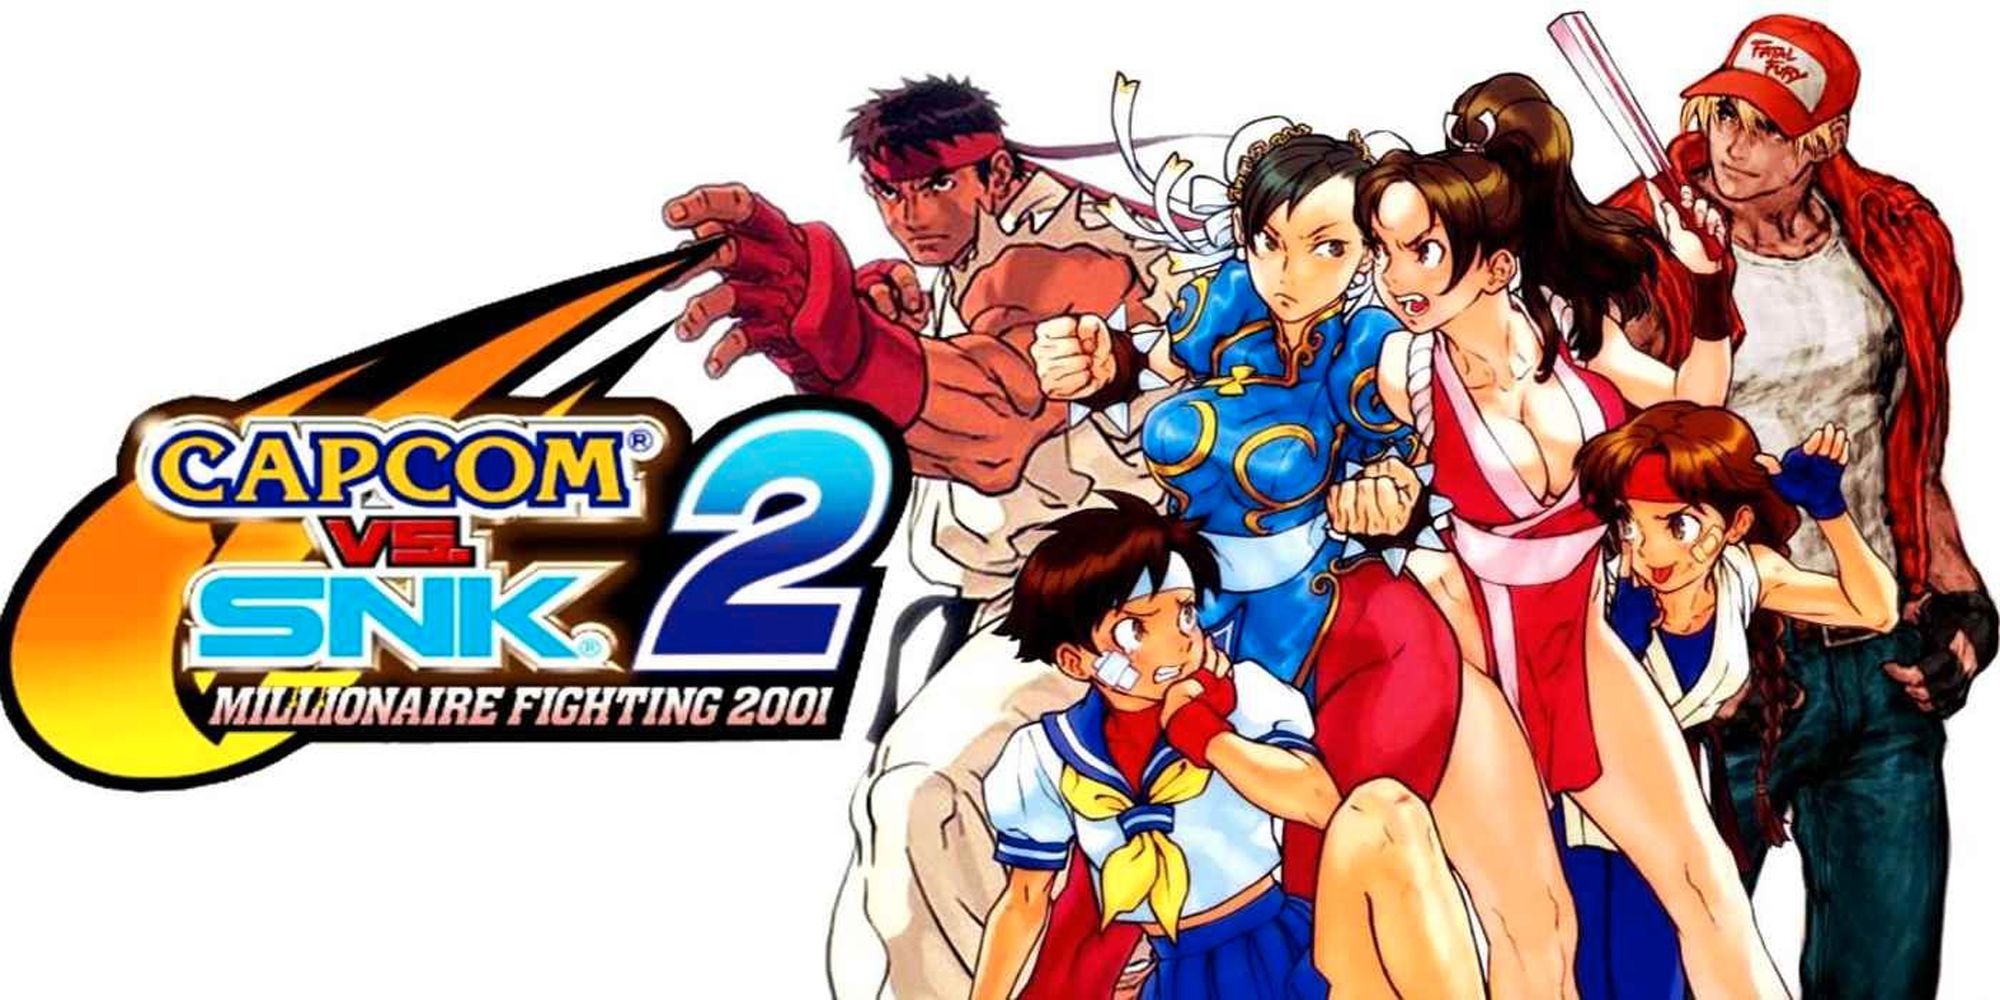 Capcom Vs. SNK 2 promo art